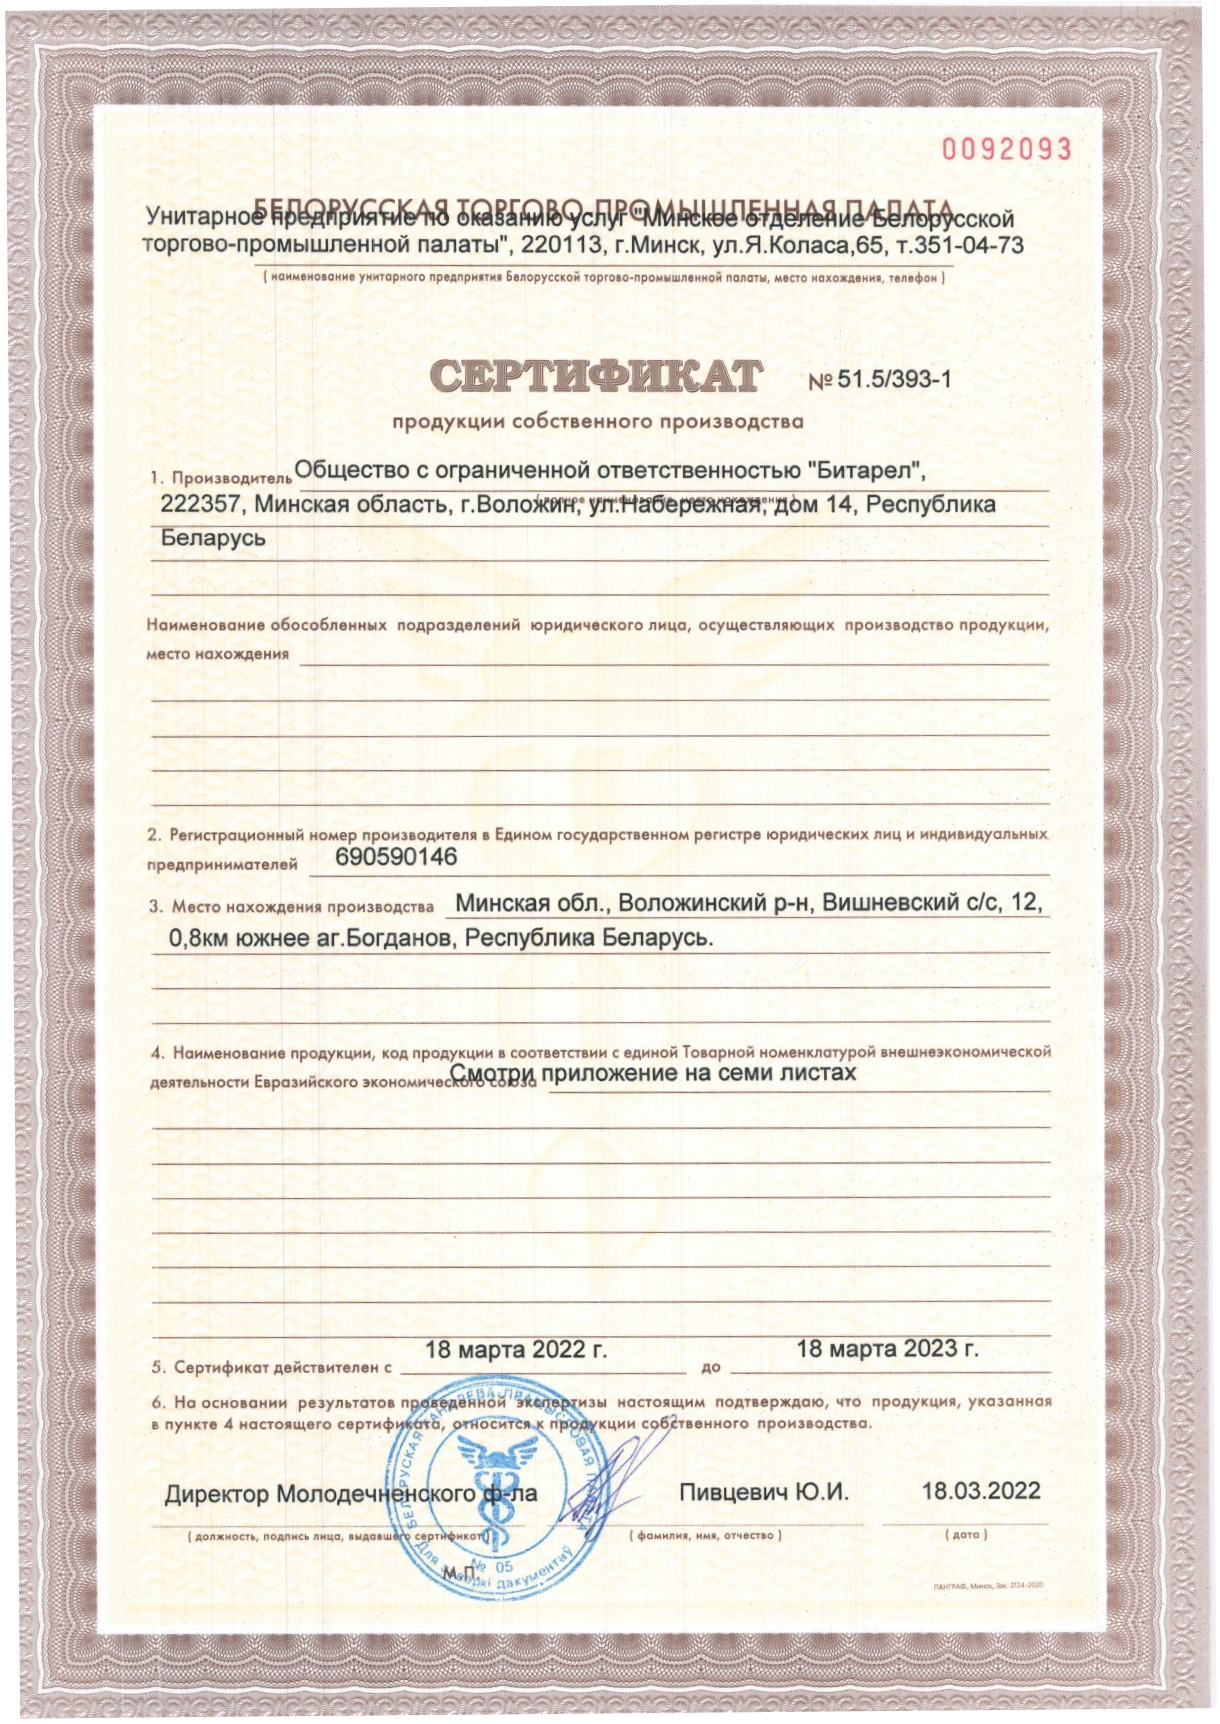 Сертификат №51.5/393-1 продукции собственного производства